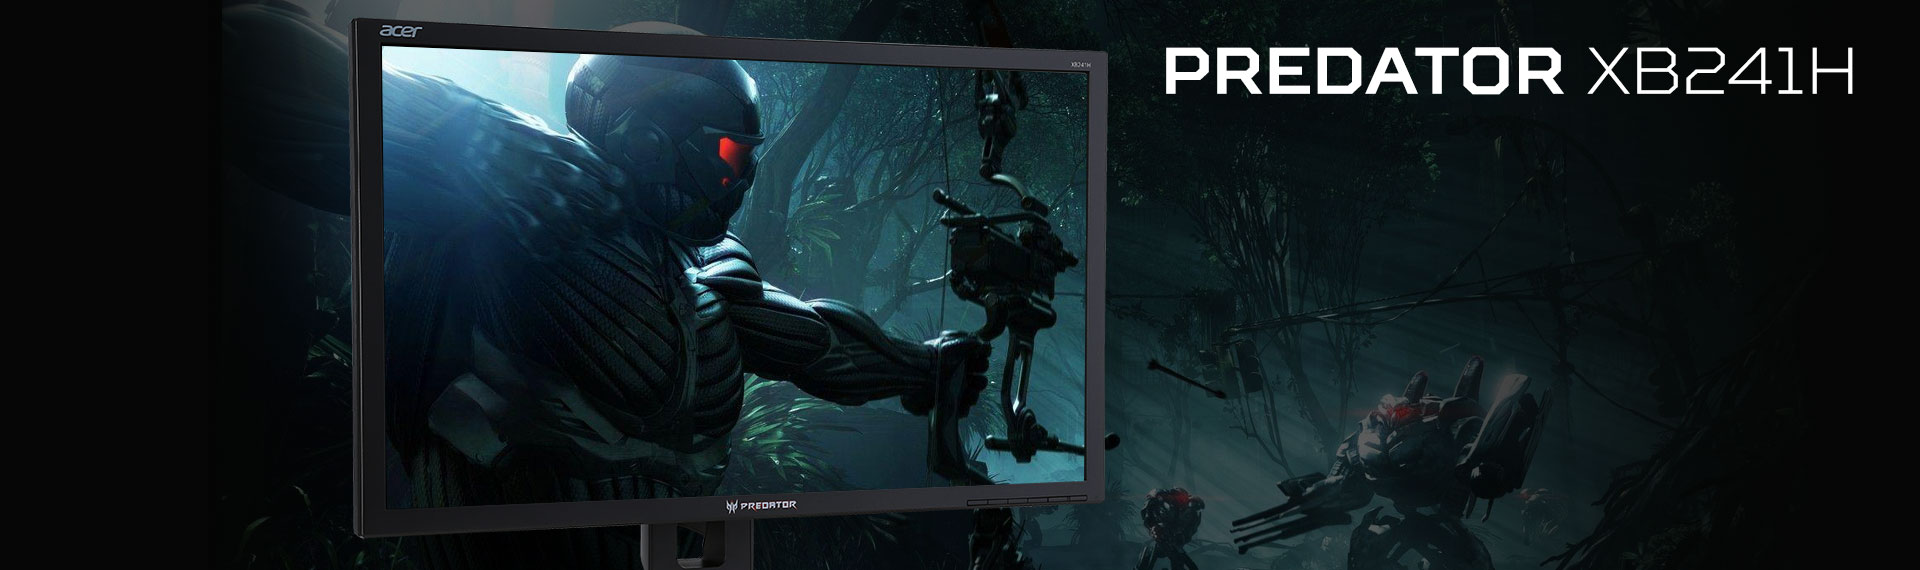 Predator XB241H, Monitor Gaming Terbaik 2021 dengan Refresh Rate 180Hz